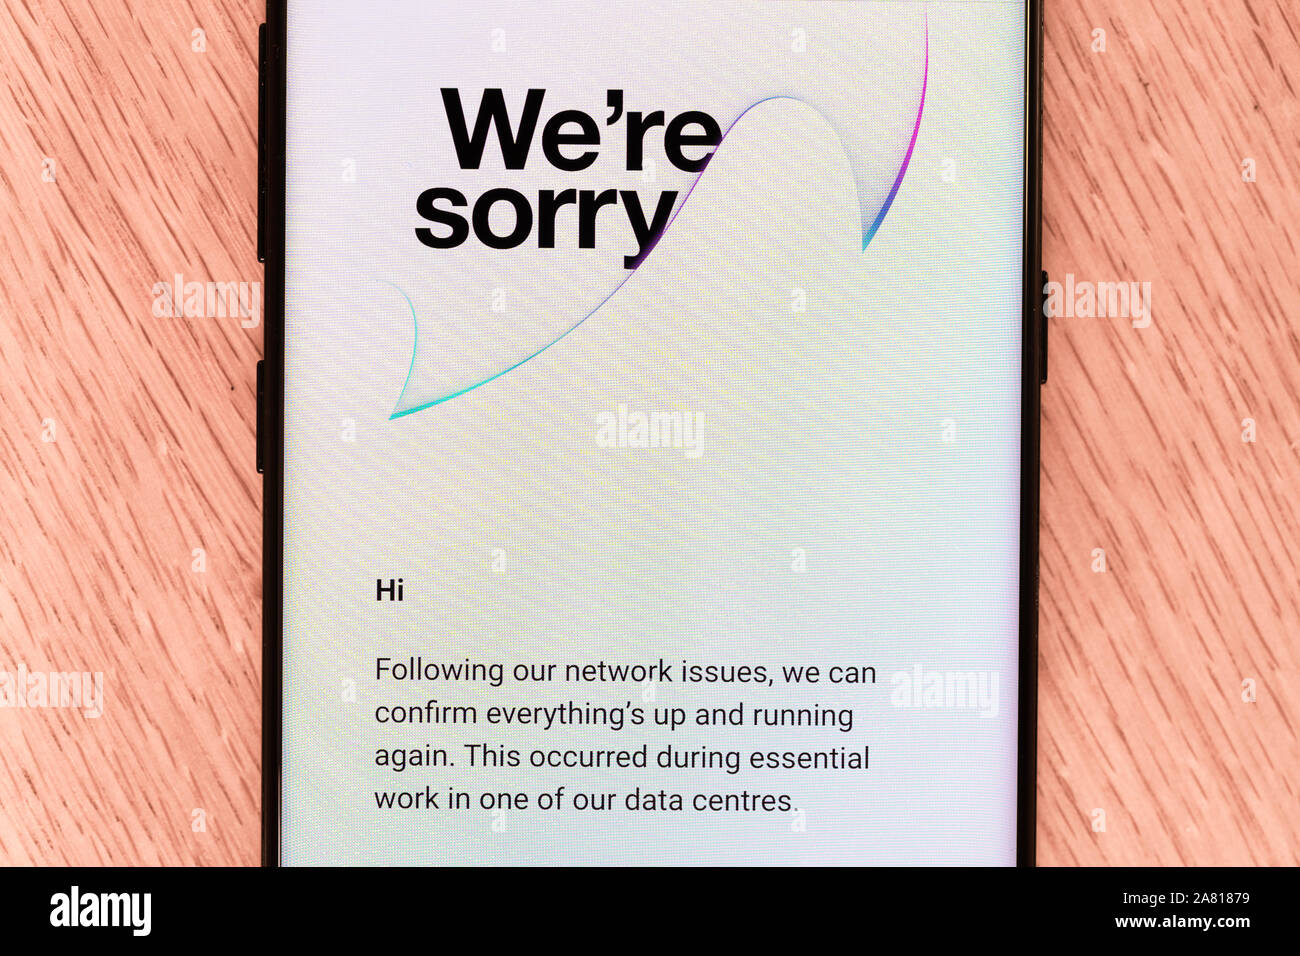 Eine E-Mail von drei auf einem Smartphone - eine britische Mobilfunkanbieter - entschuldigt sich für eines der letzten Netzwerkausfall Stockfoto